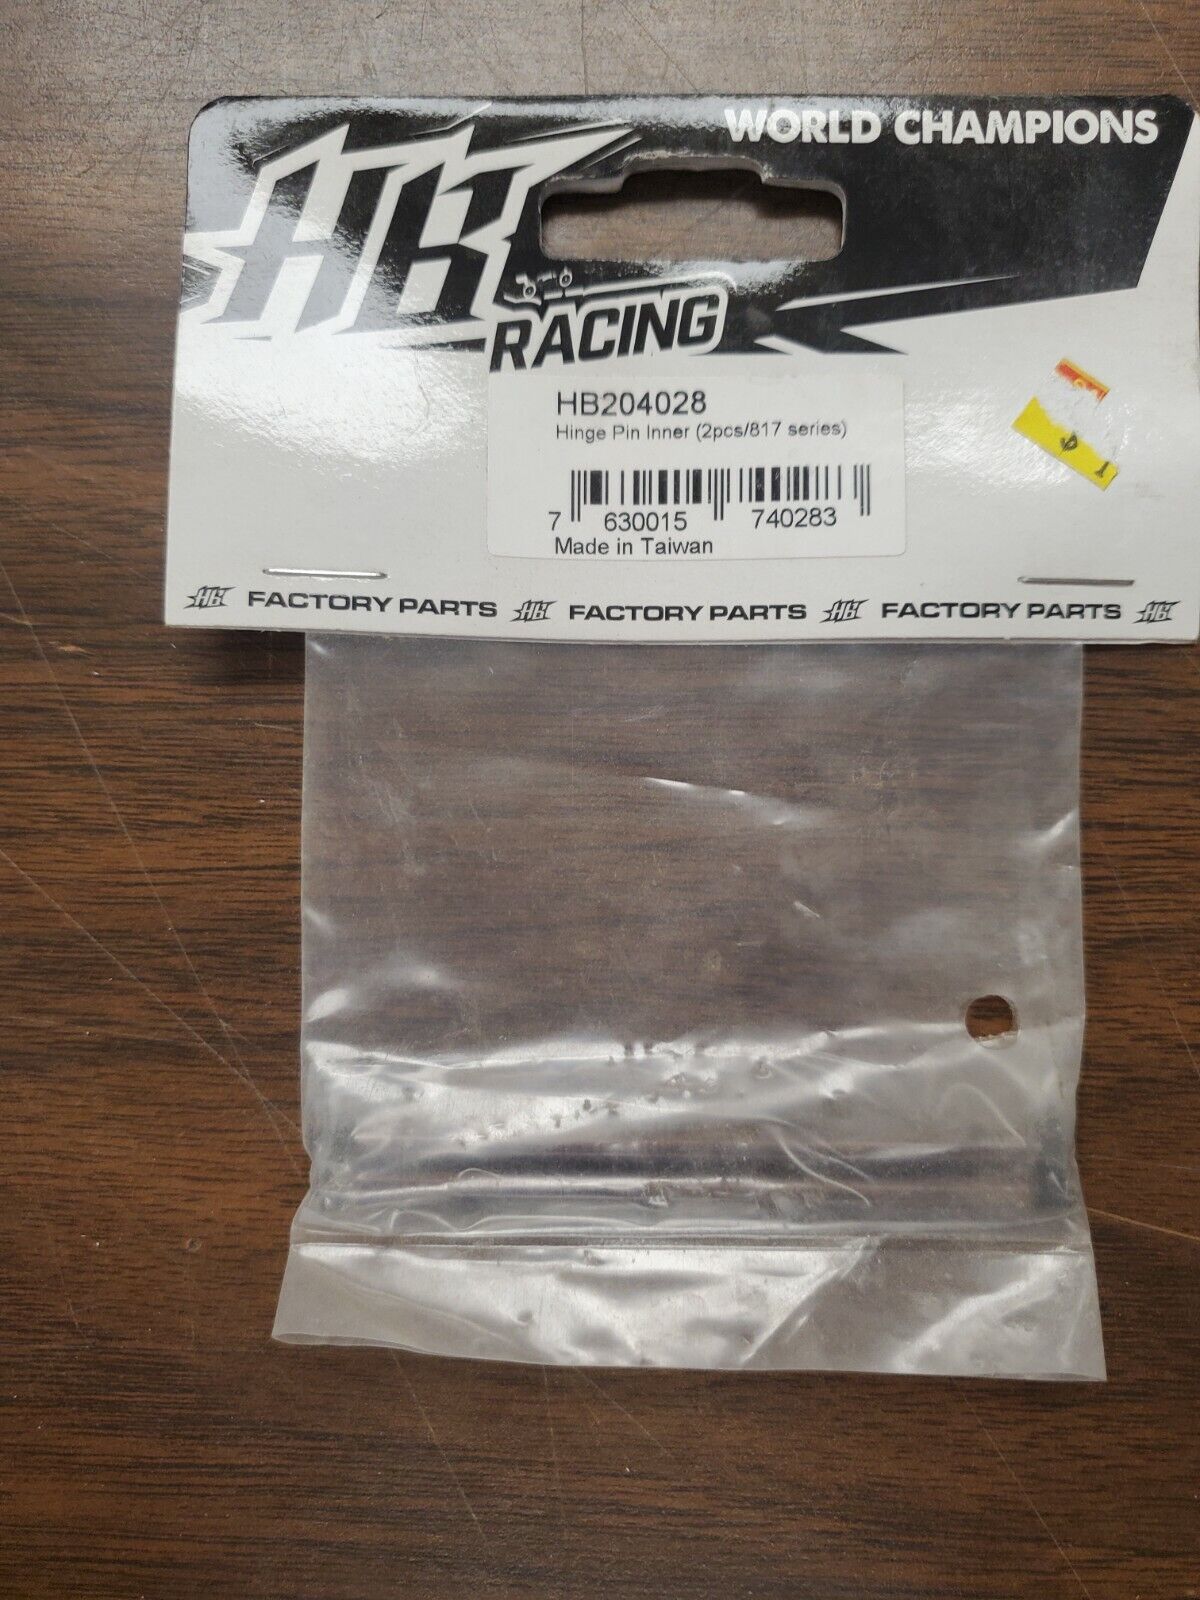 HB Racing Hinge Pin Inner (2pcs/817 series) HB204028